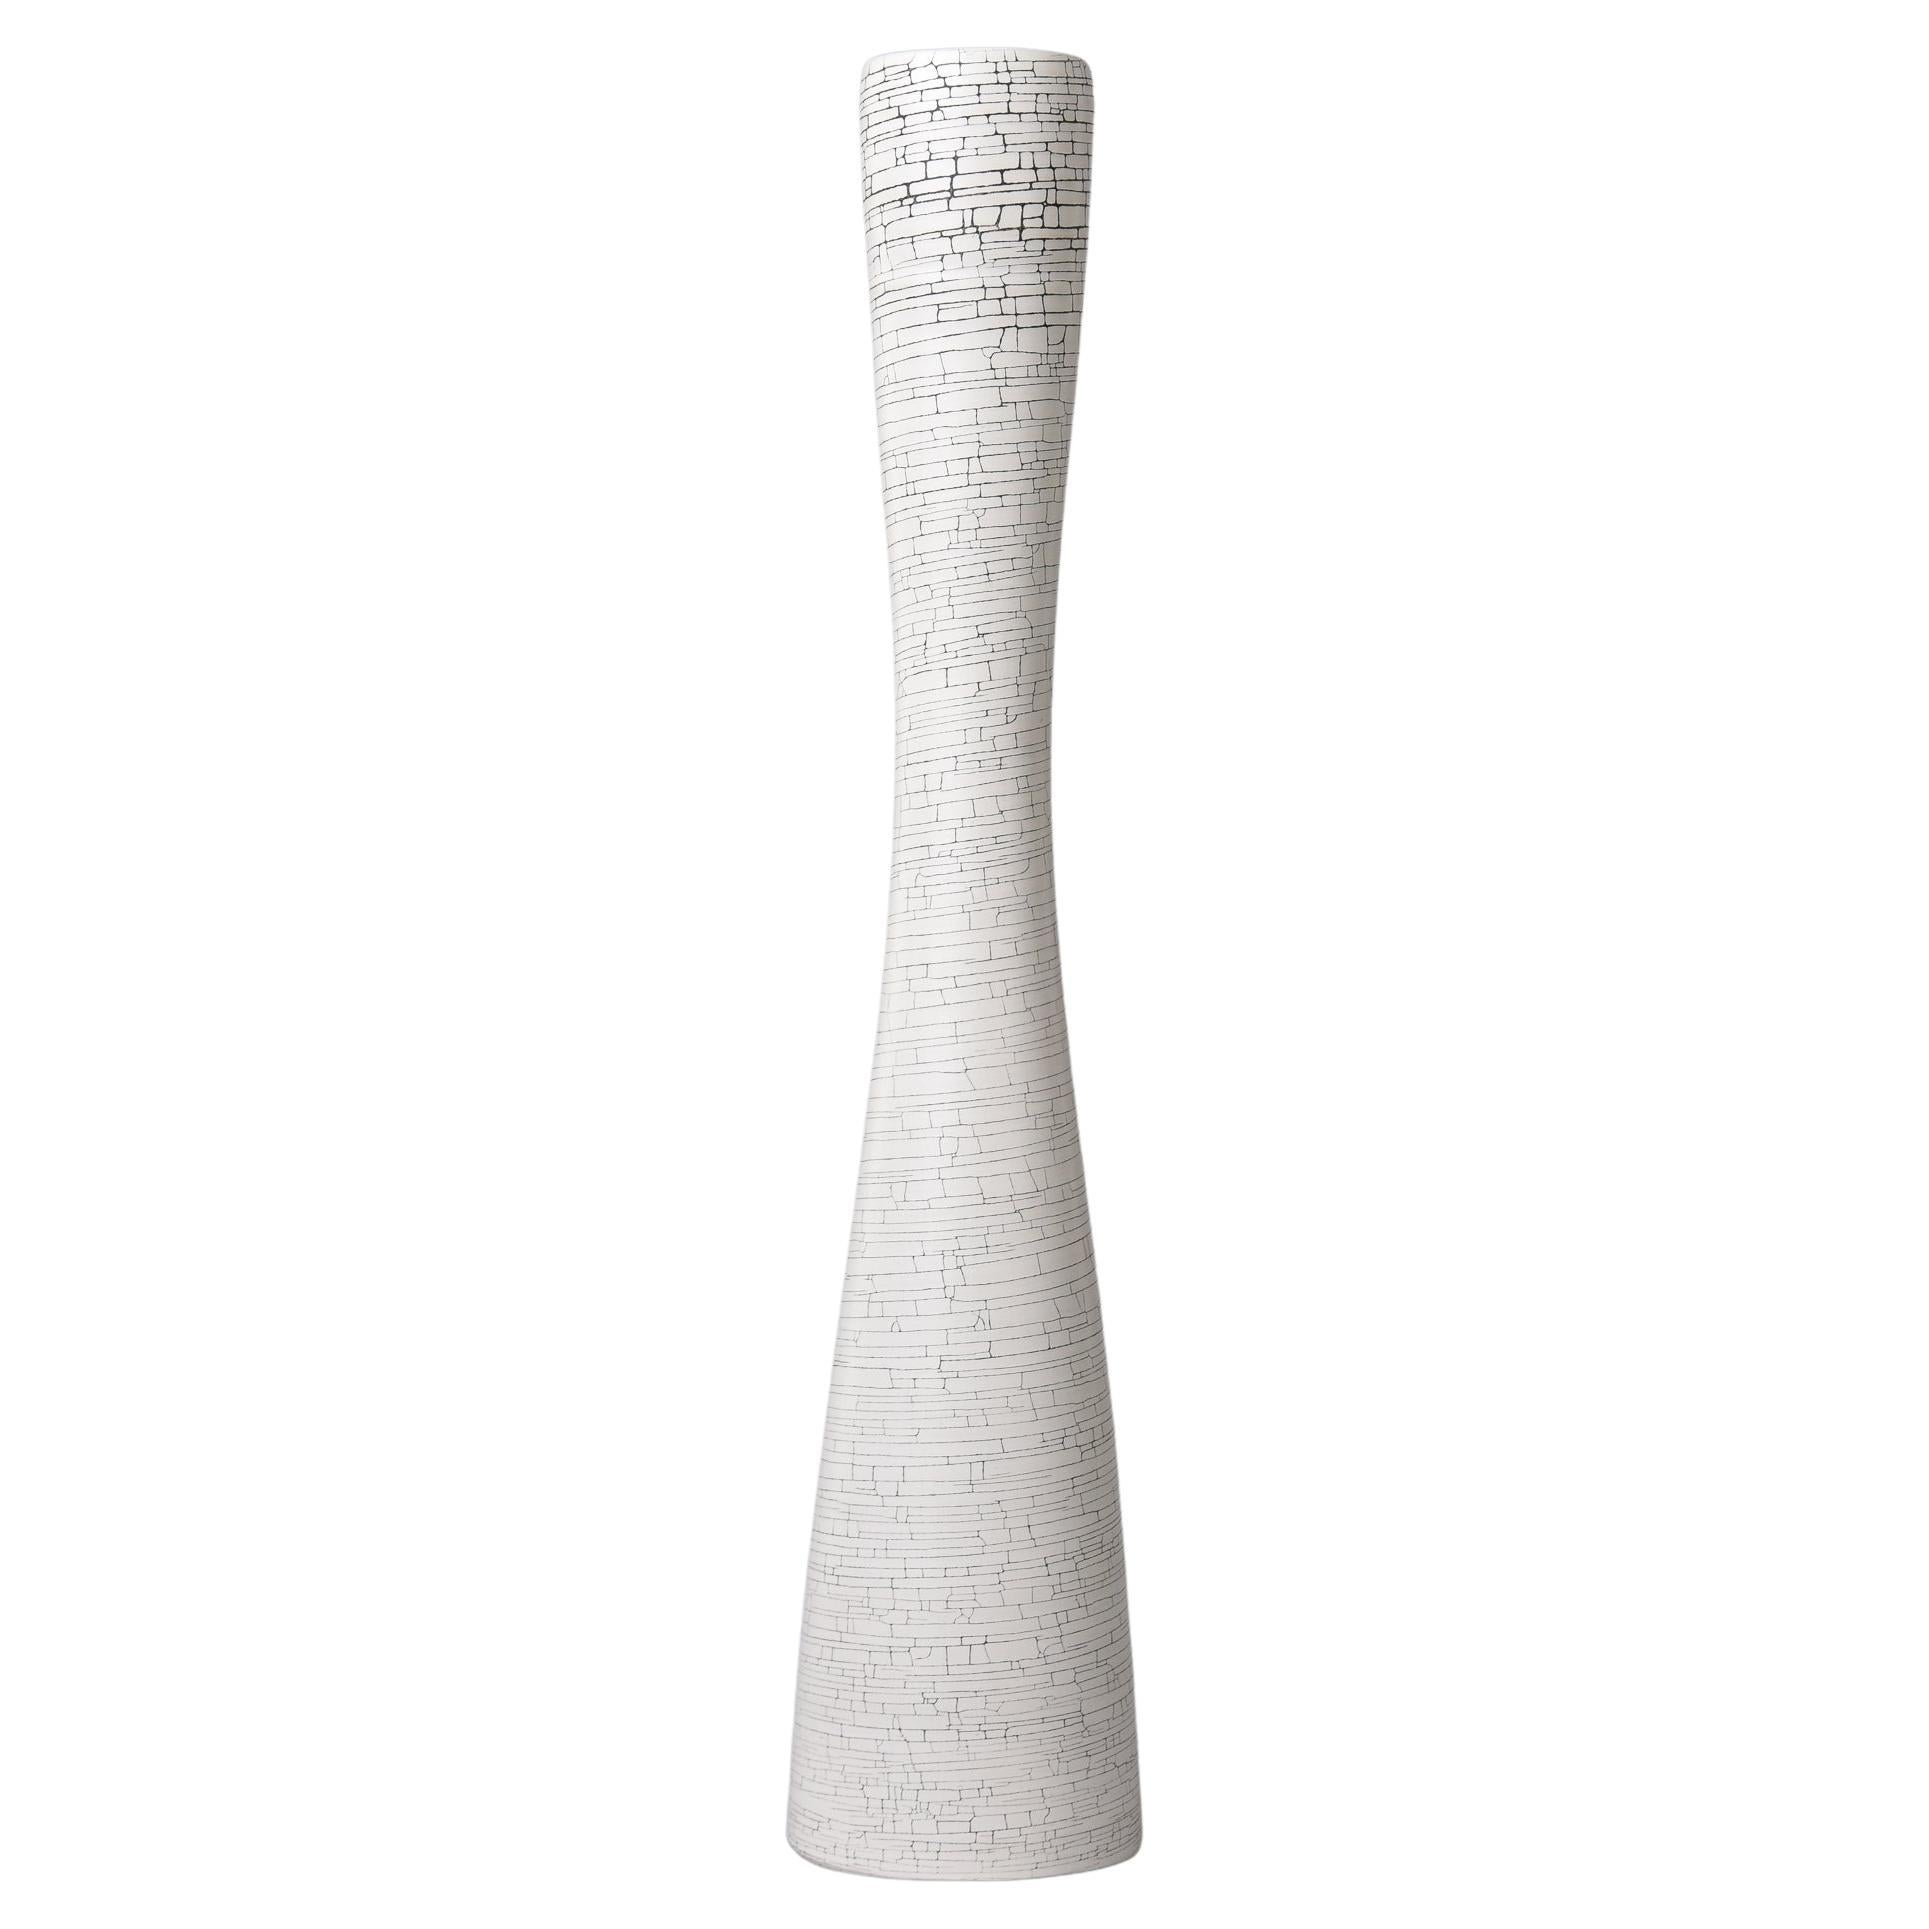 New Rina Menardi Tall White Crackle Flute Vase For Sale